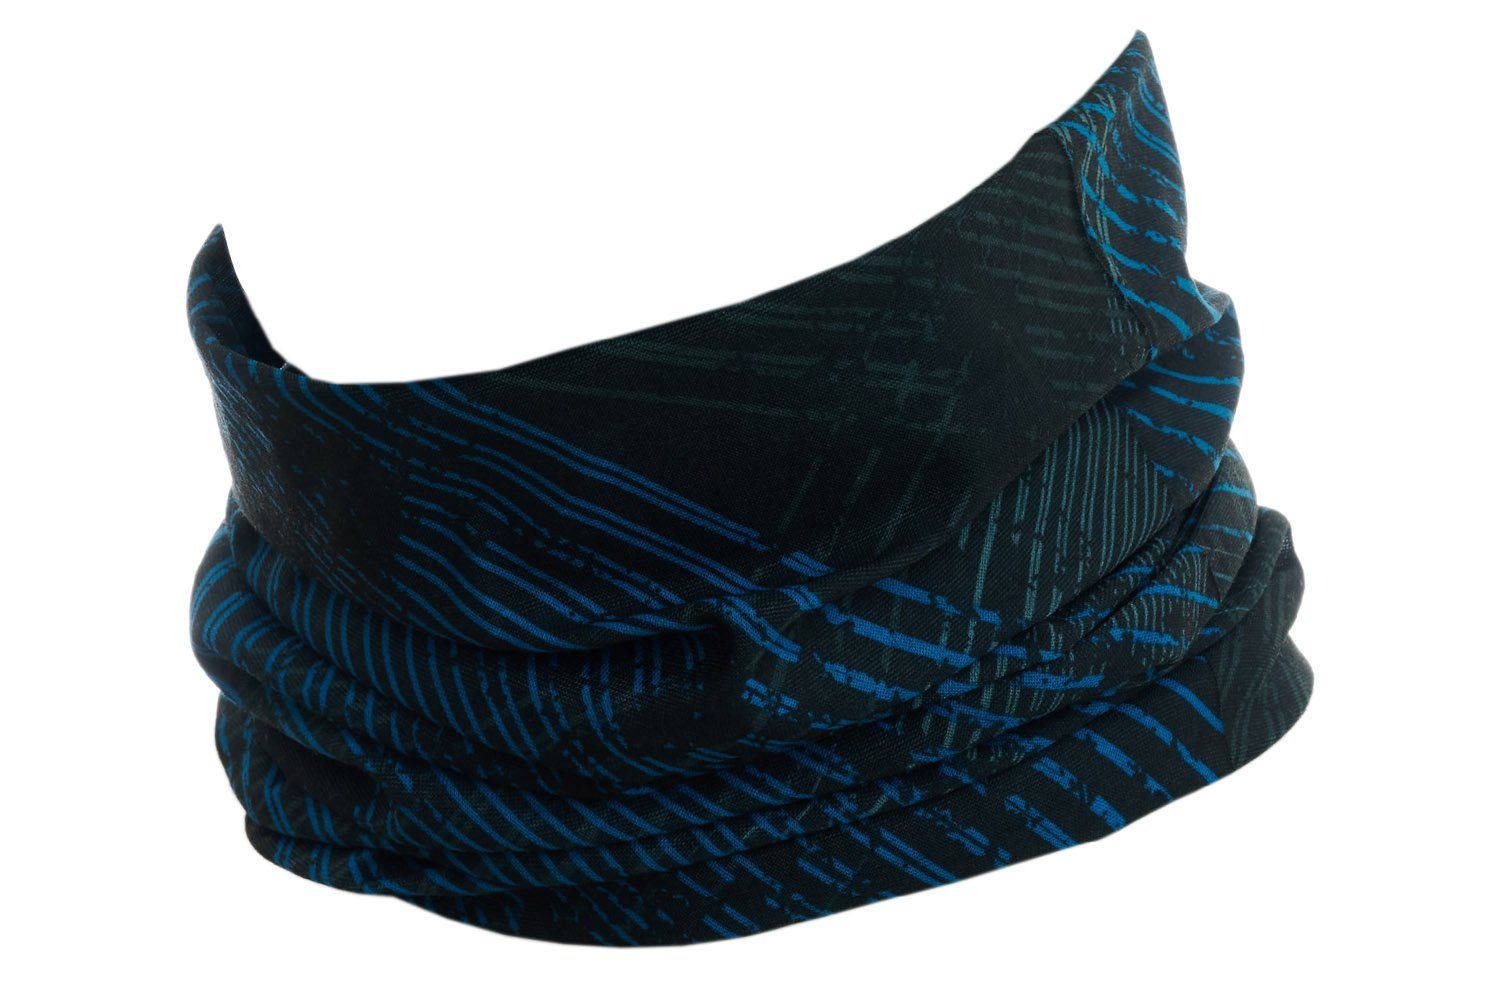 Hilltop Multifunktionstuch Halstuch, Sporttuch, Schlauchtuch, Kopftuch, Schal, Damen und Herren blau schwarz